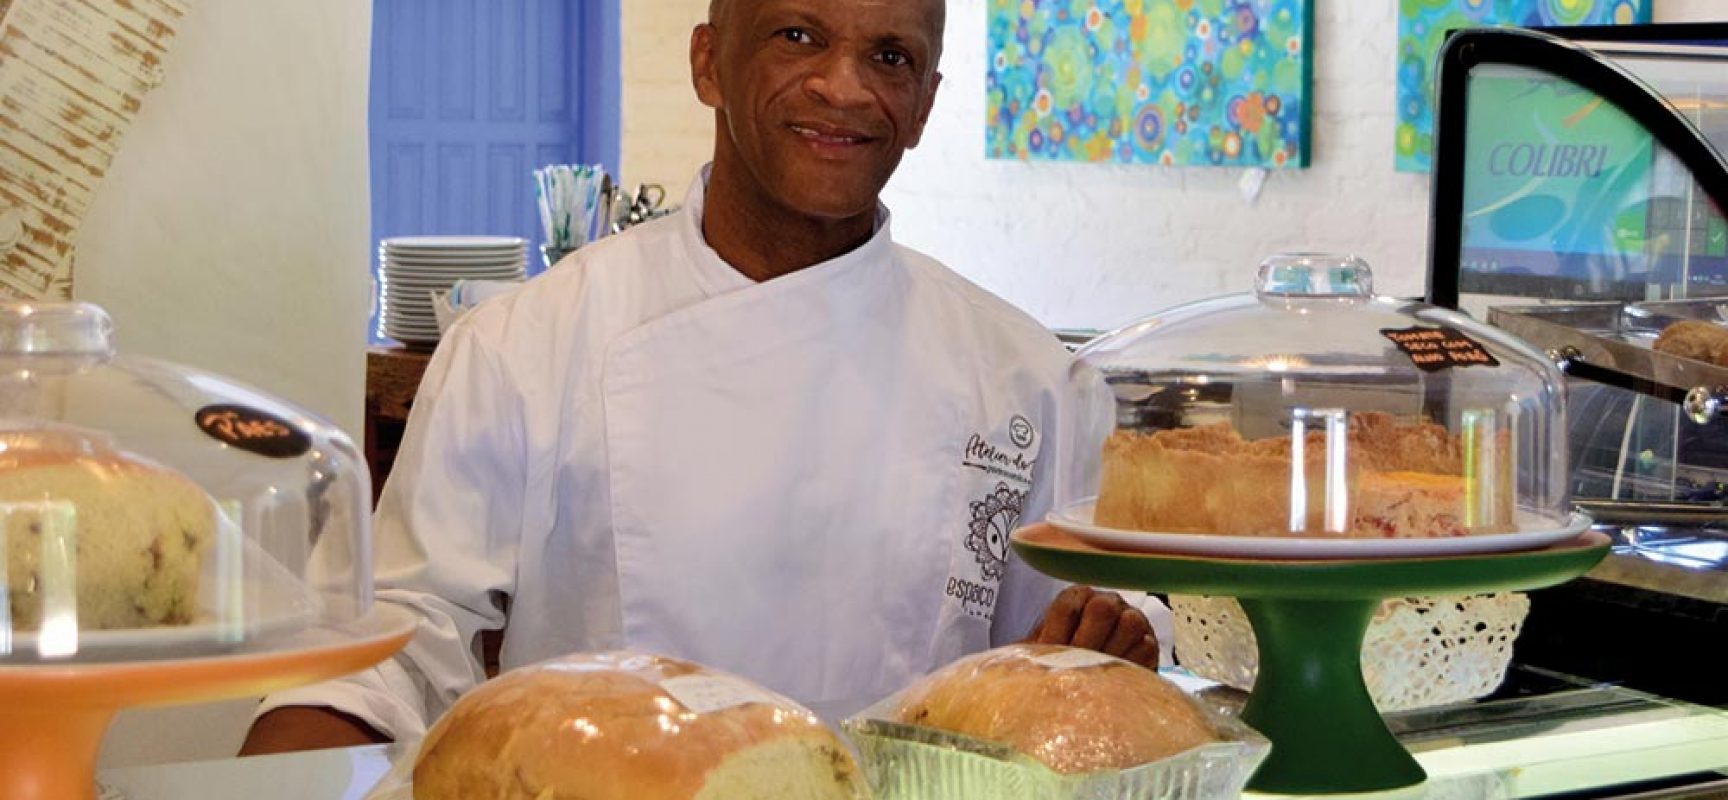 Chef Tonhão inaugura atelier gastronômico em Ilhabela